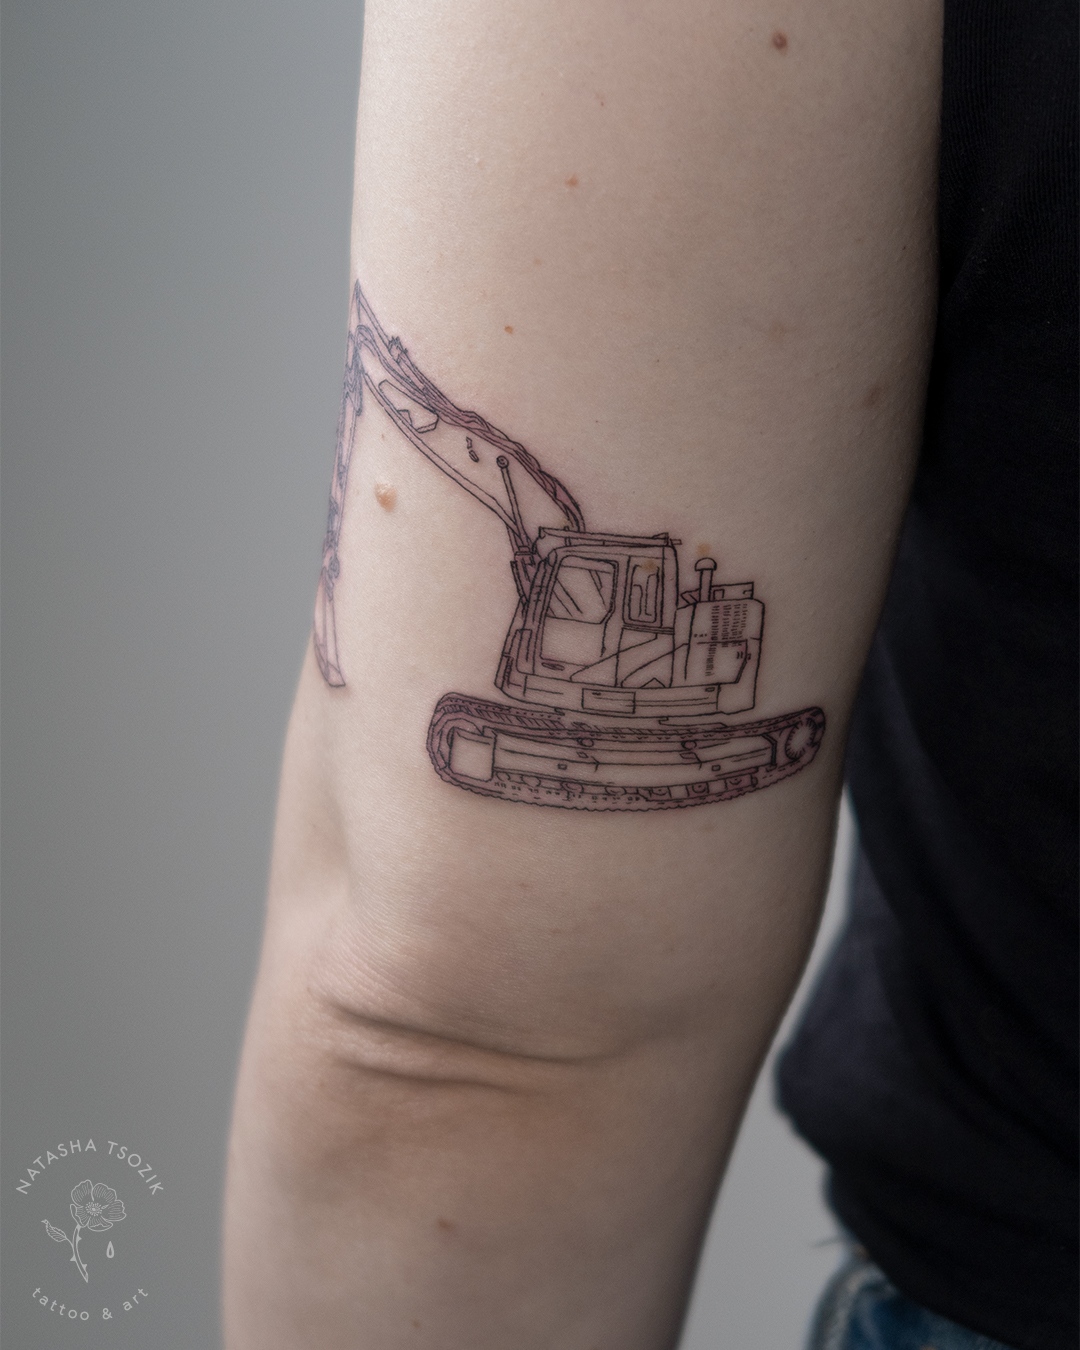 CAT tattoo on a forearm by Natasha Tsozik 2